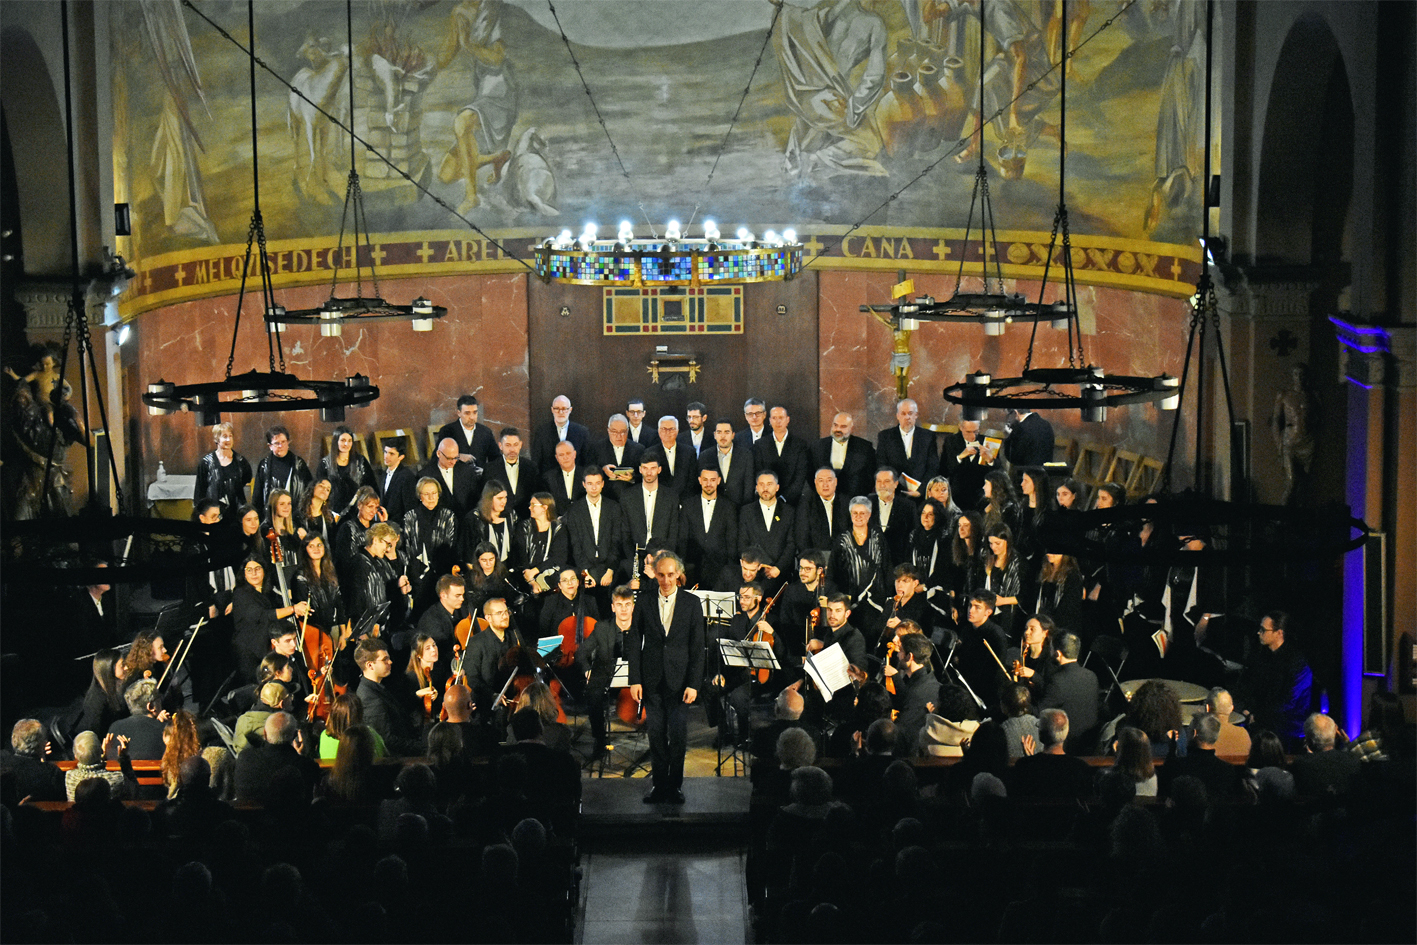 La Polifònica de Puig-reig i Camerata Bacasis agraeixen els aplaudiments del públic al final del concert d'El Messies a l'Església Parroquial de Sant Cristòfol, dins de la Festa de Sant Sebastià.